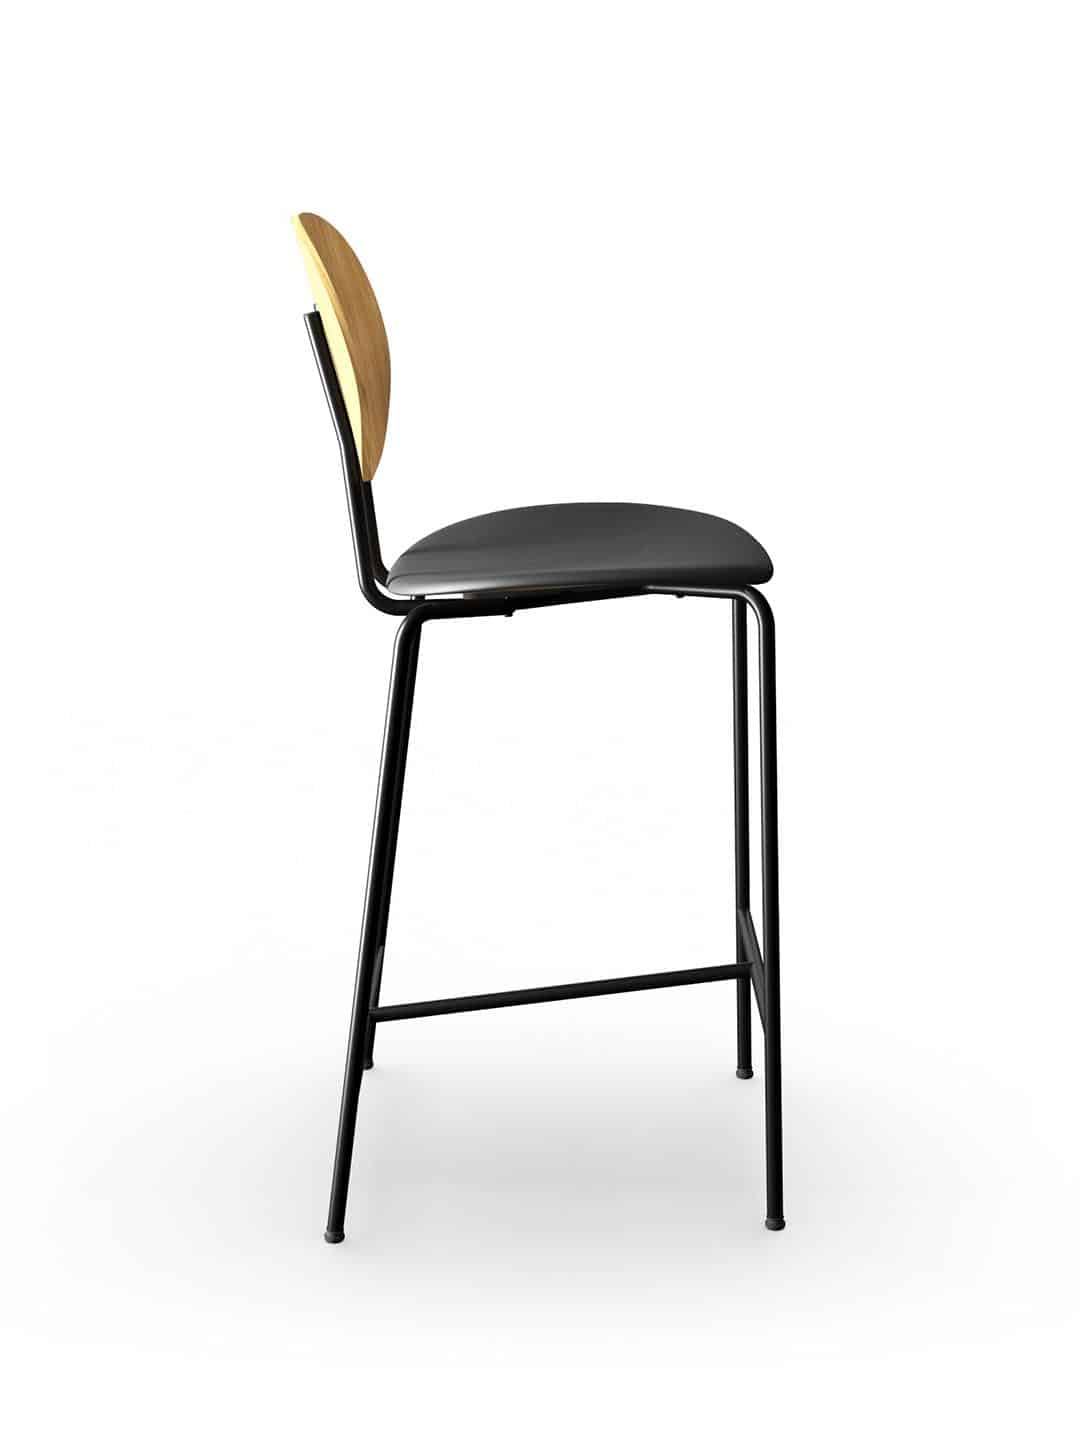 Полубарный стул Sibast PIET HEIN премиум класса из натуральной древесины